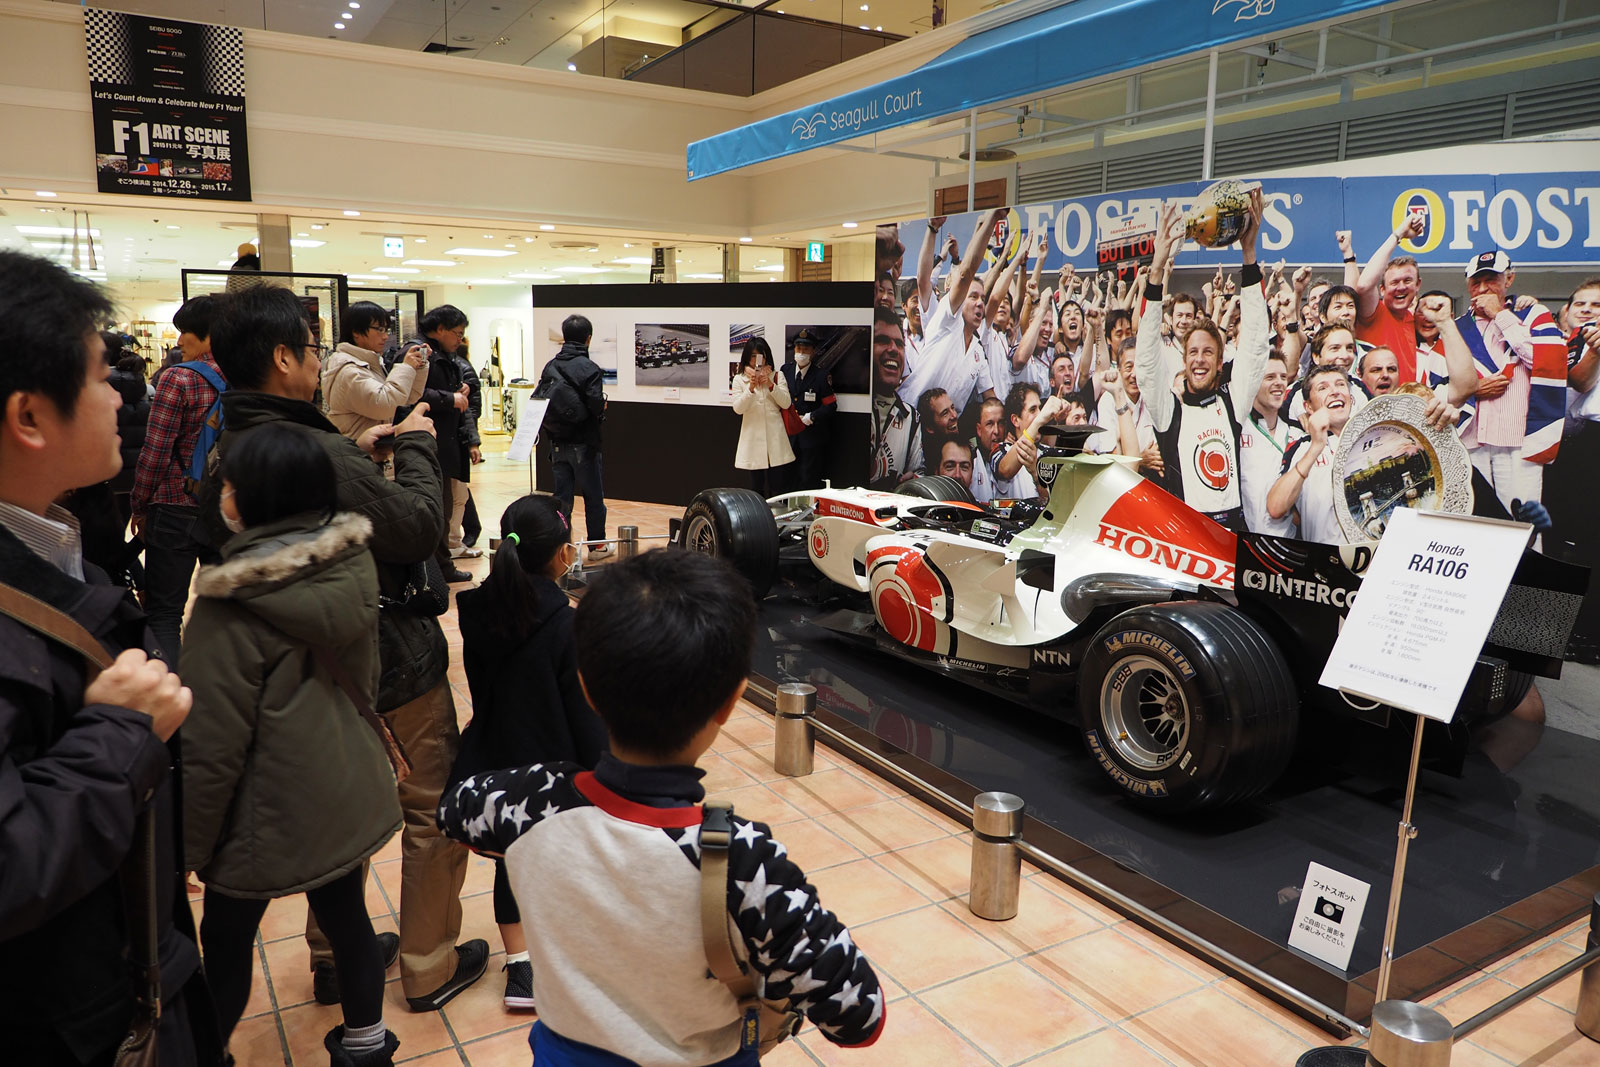 【特別レポート】ホンダF1マシンも展示『F1 ART SCENE写真展』